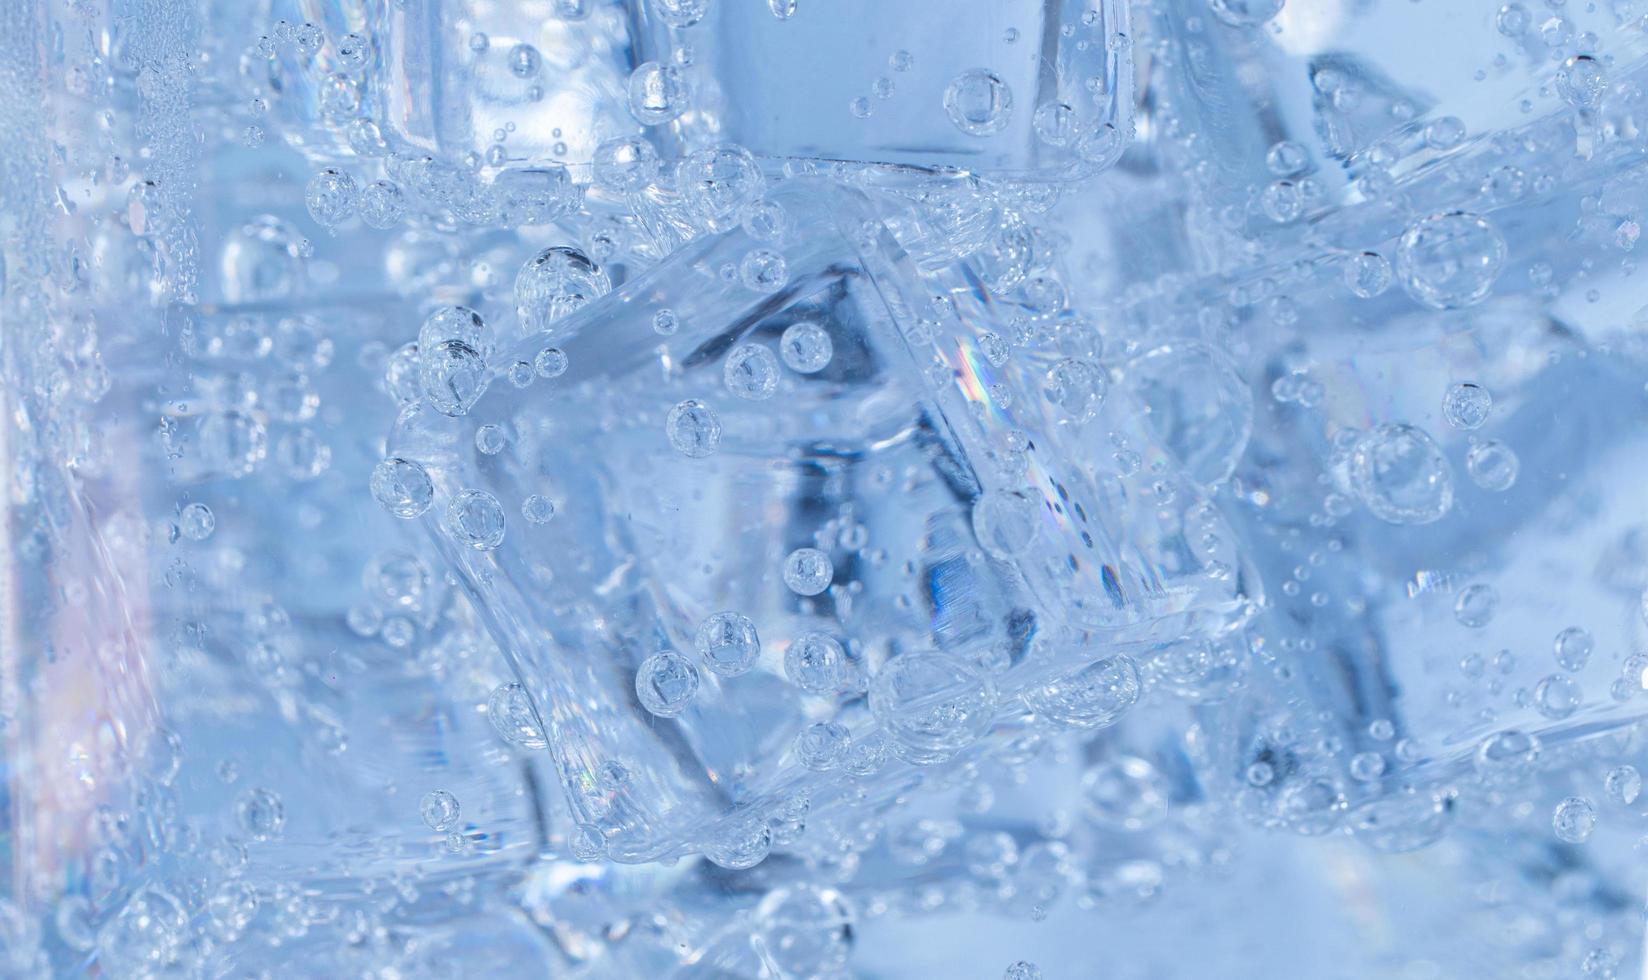 isbitar med luftbubblor virvlar runt i glaset. sodavatten och kyl i ett klart glas. foto